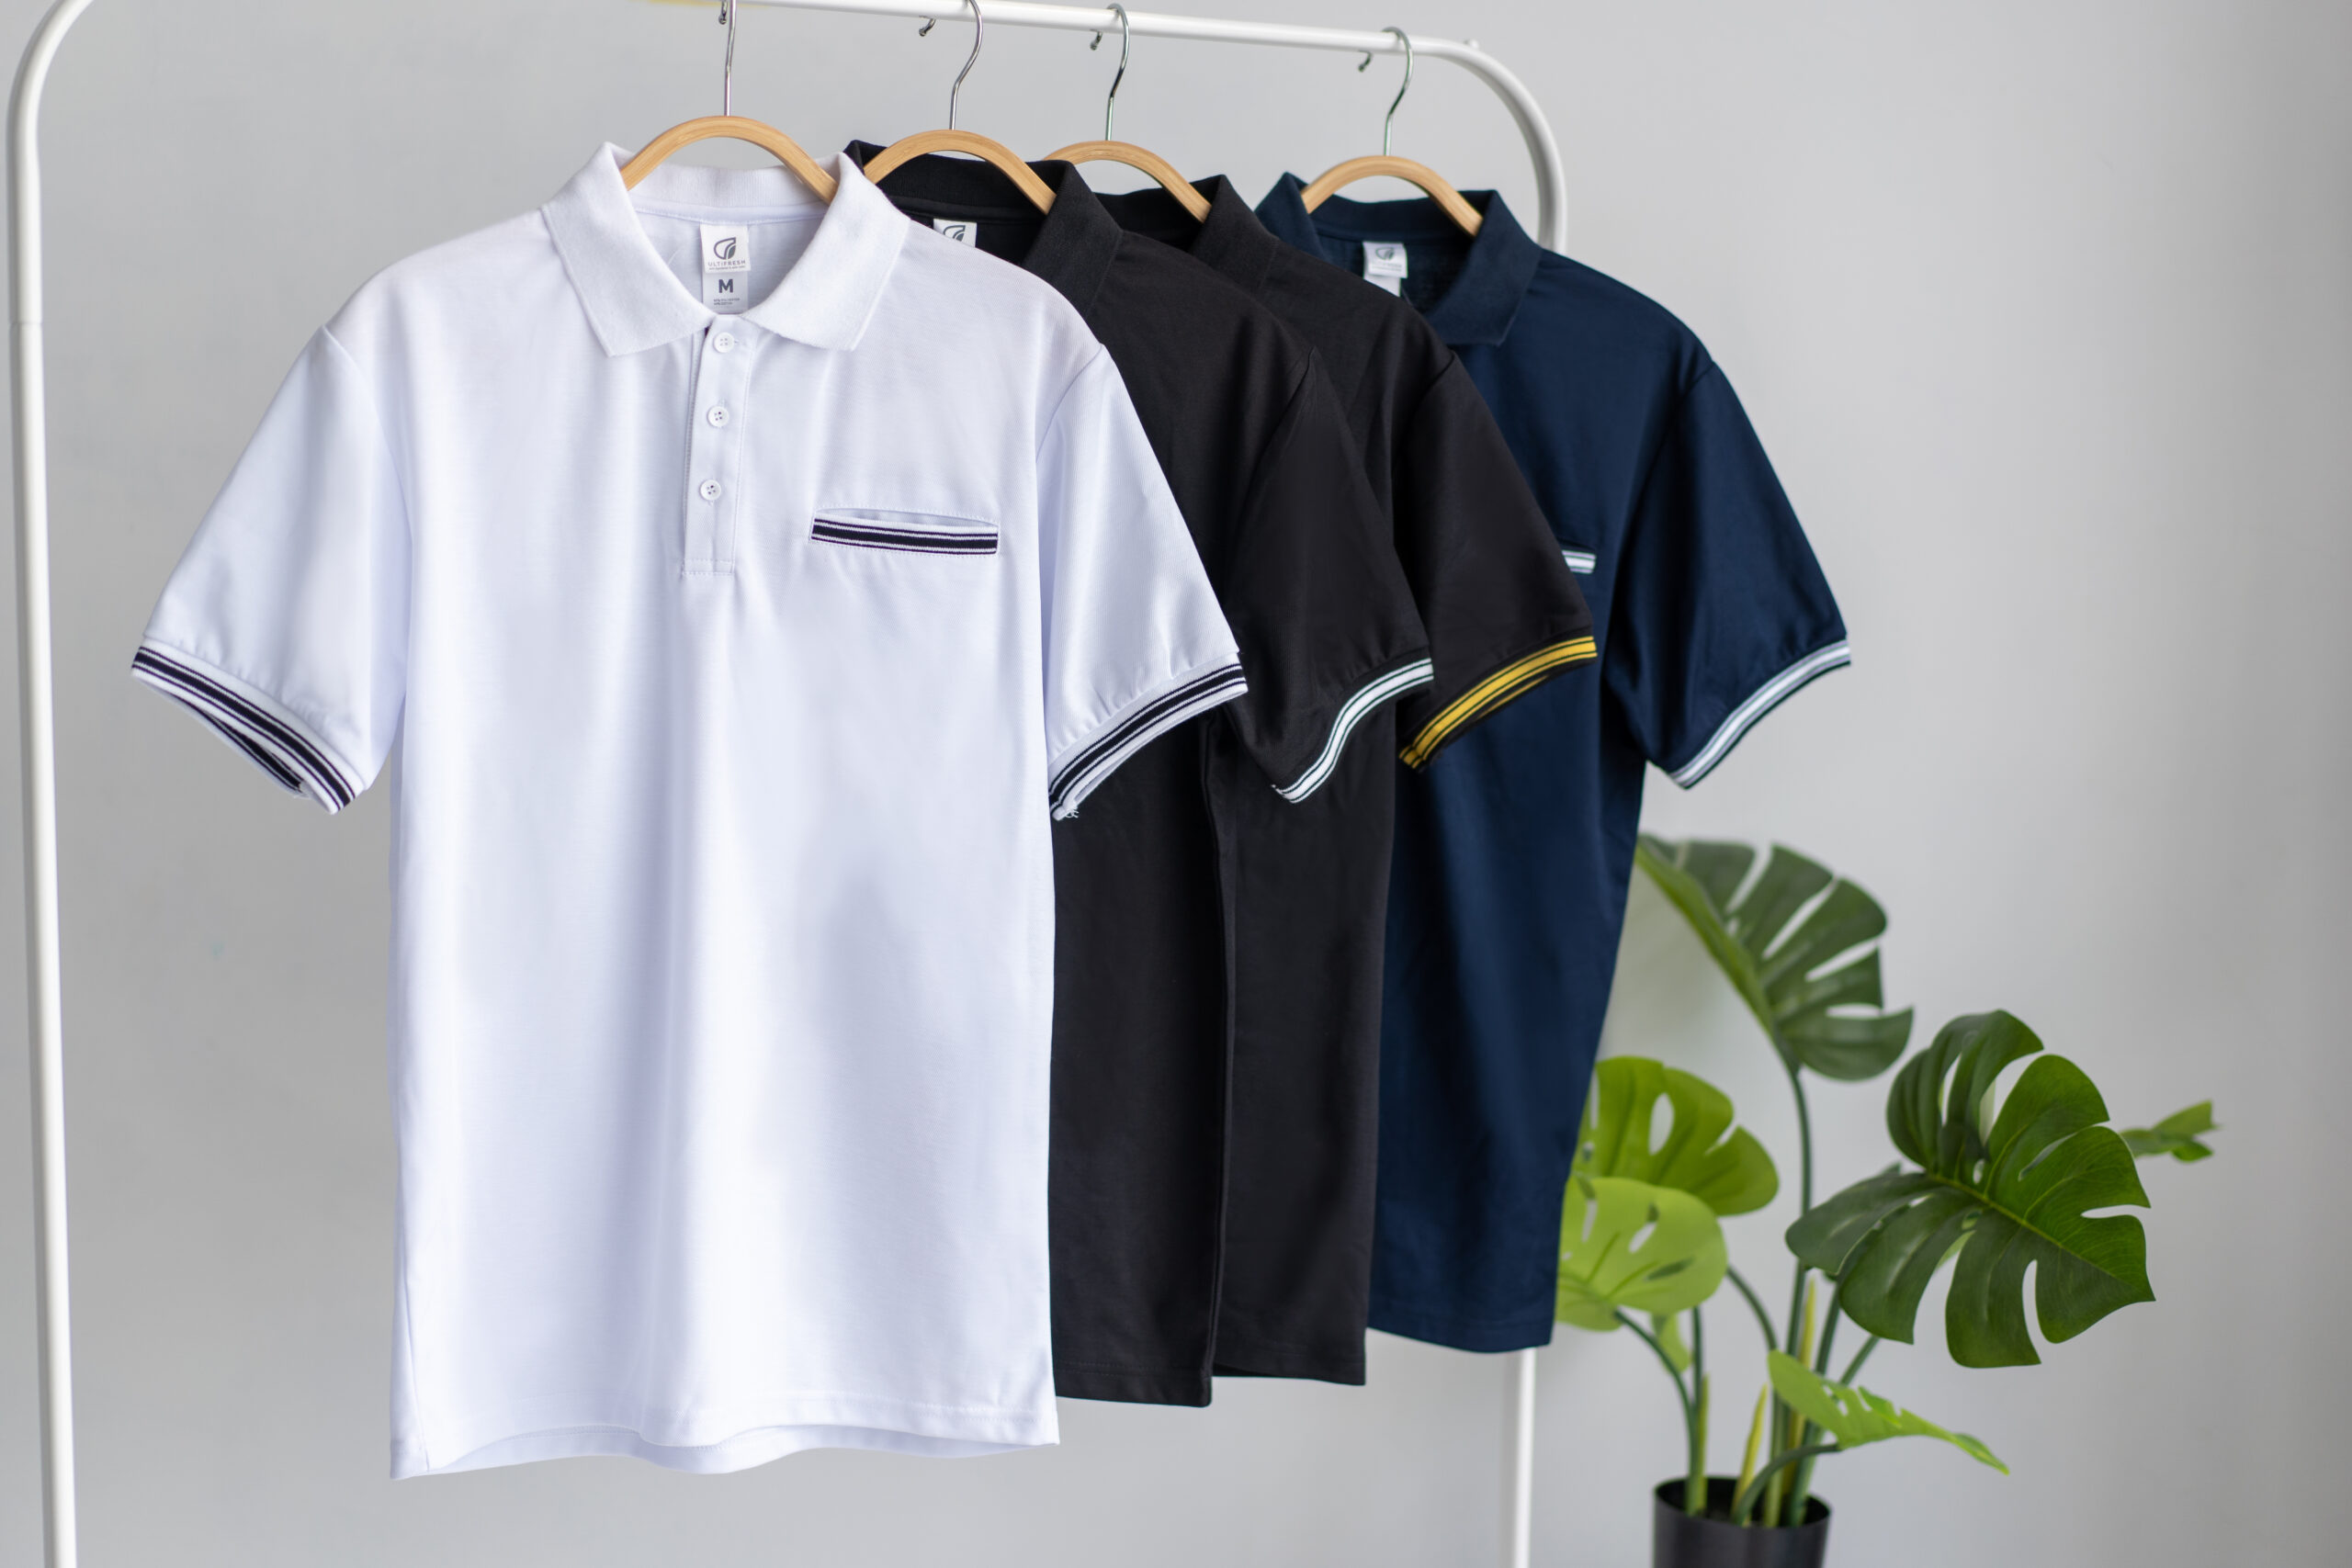 T-Shirt Wholesaler| T-Shirt Supplier & Manufacturer Malaysia - Ultifresh